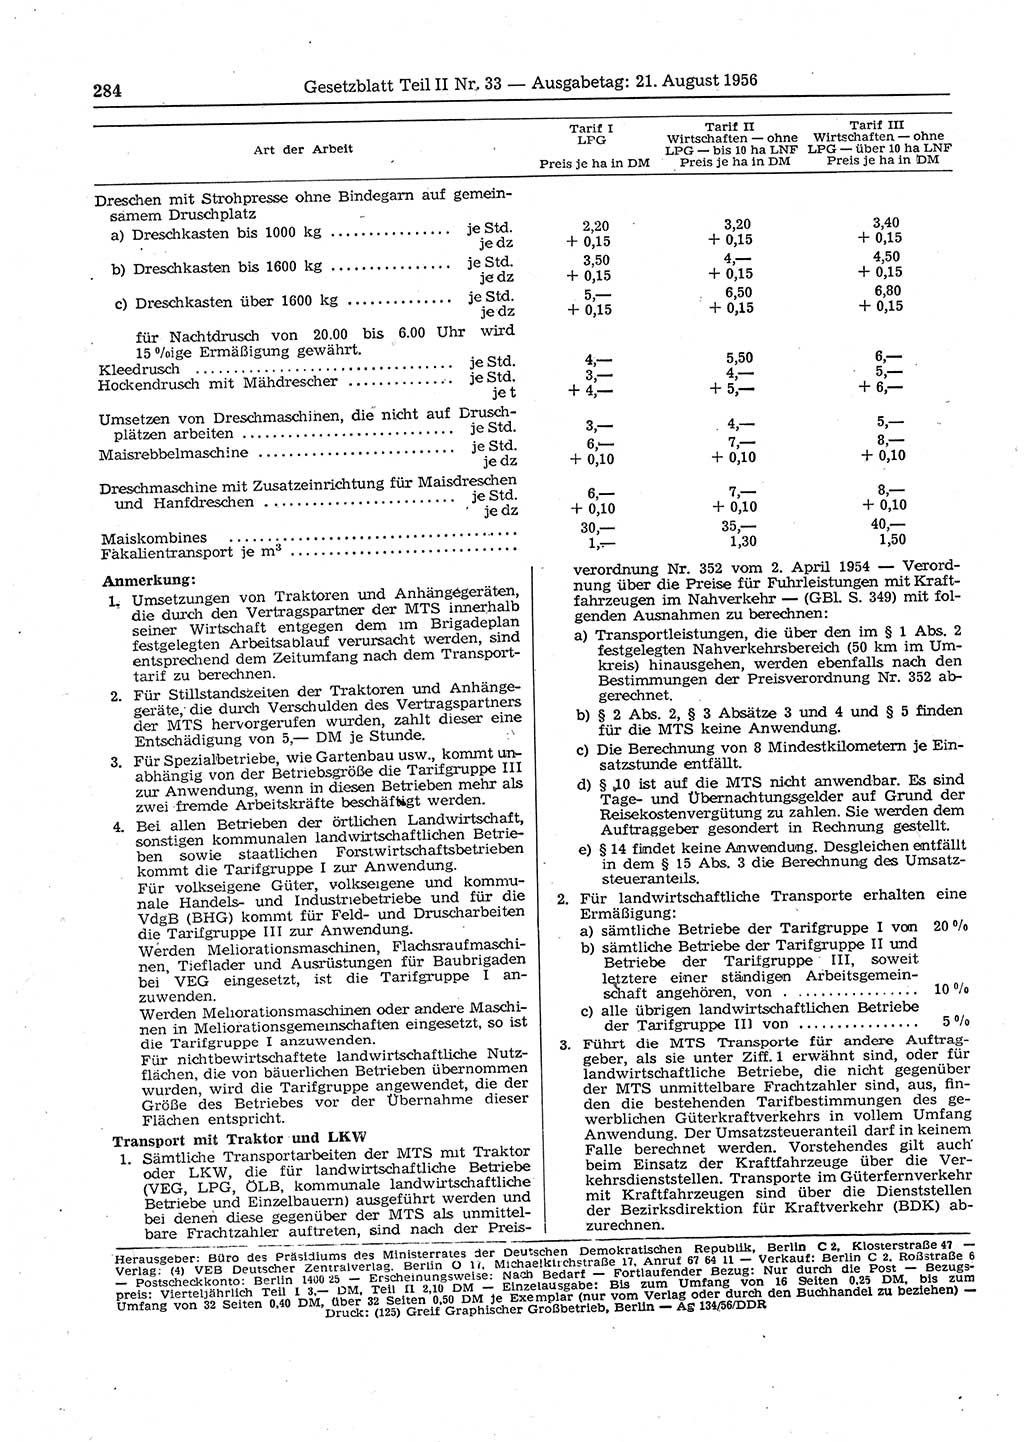 Gesetzblatt (GBl.) der Deutschen Demokratischen Republik (DDR) Teil ⅠⅠ 1956, Seite 284 (GBl. DDR ⅠⅠ 1956, S. 284)